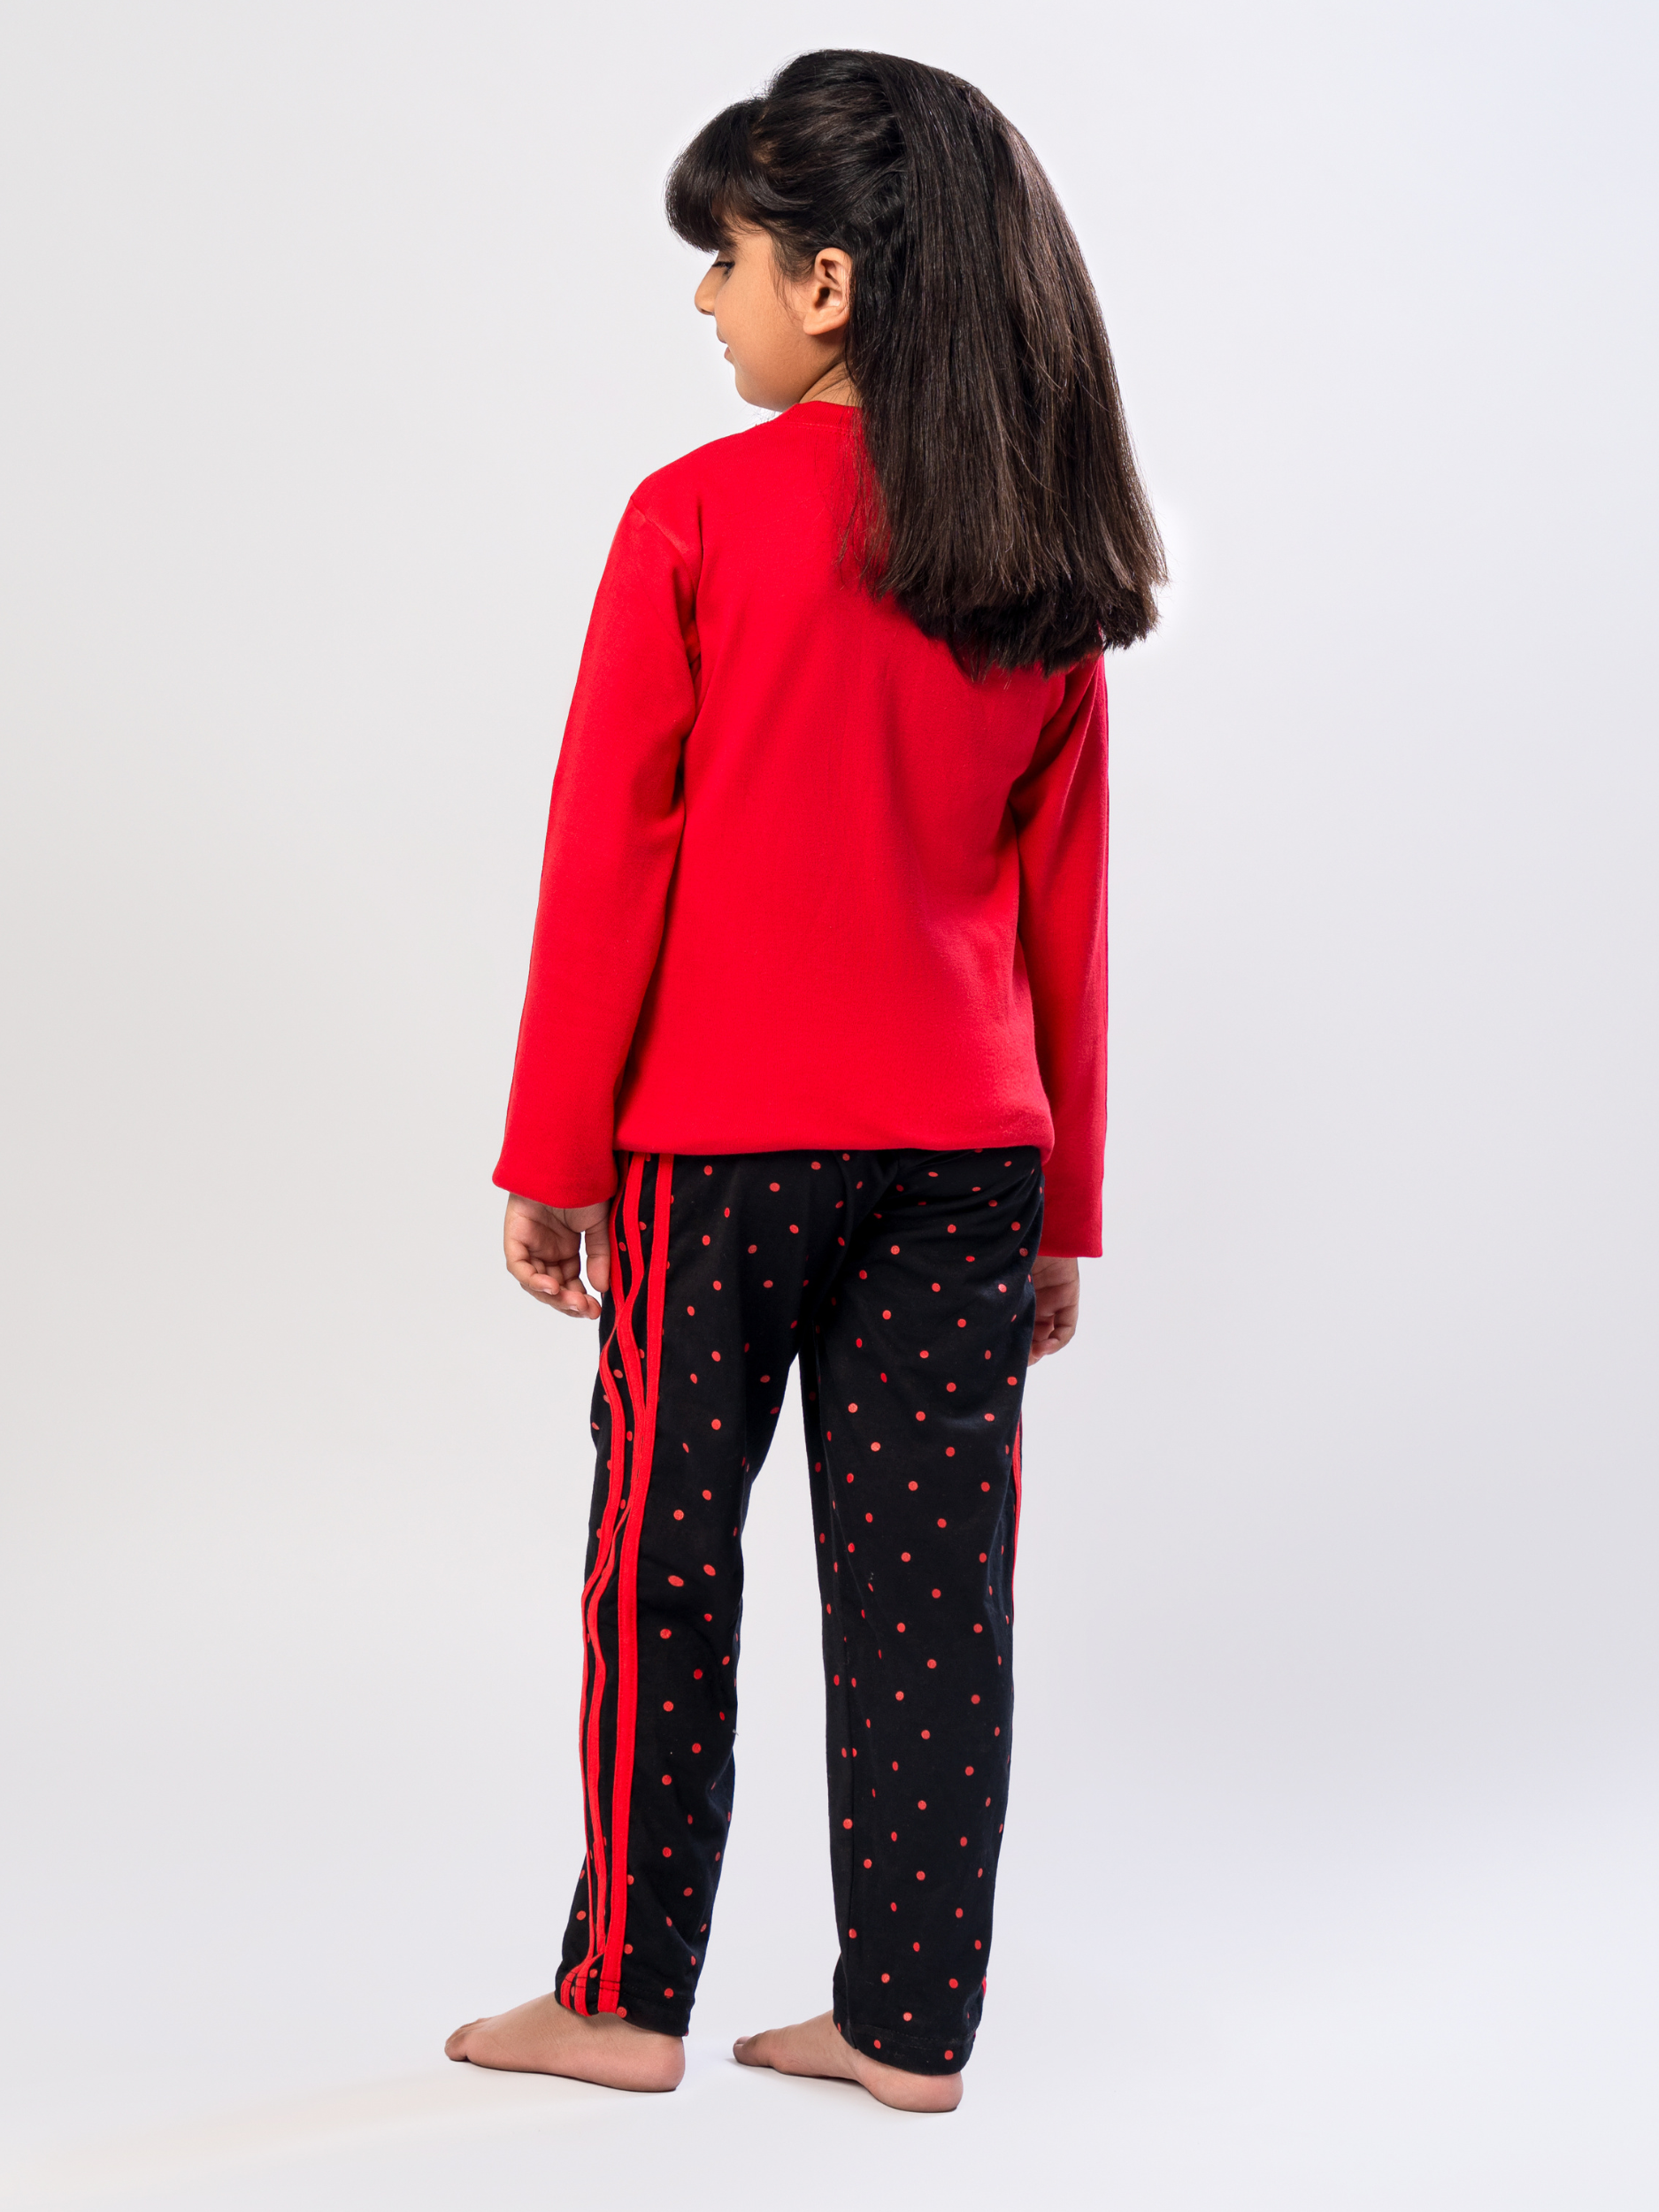 Kids Premium Suit (Interlock) Unisex Full Sleeves